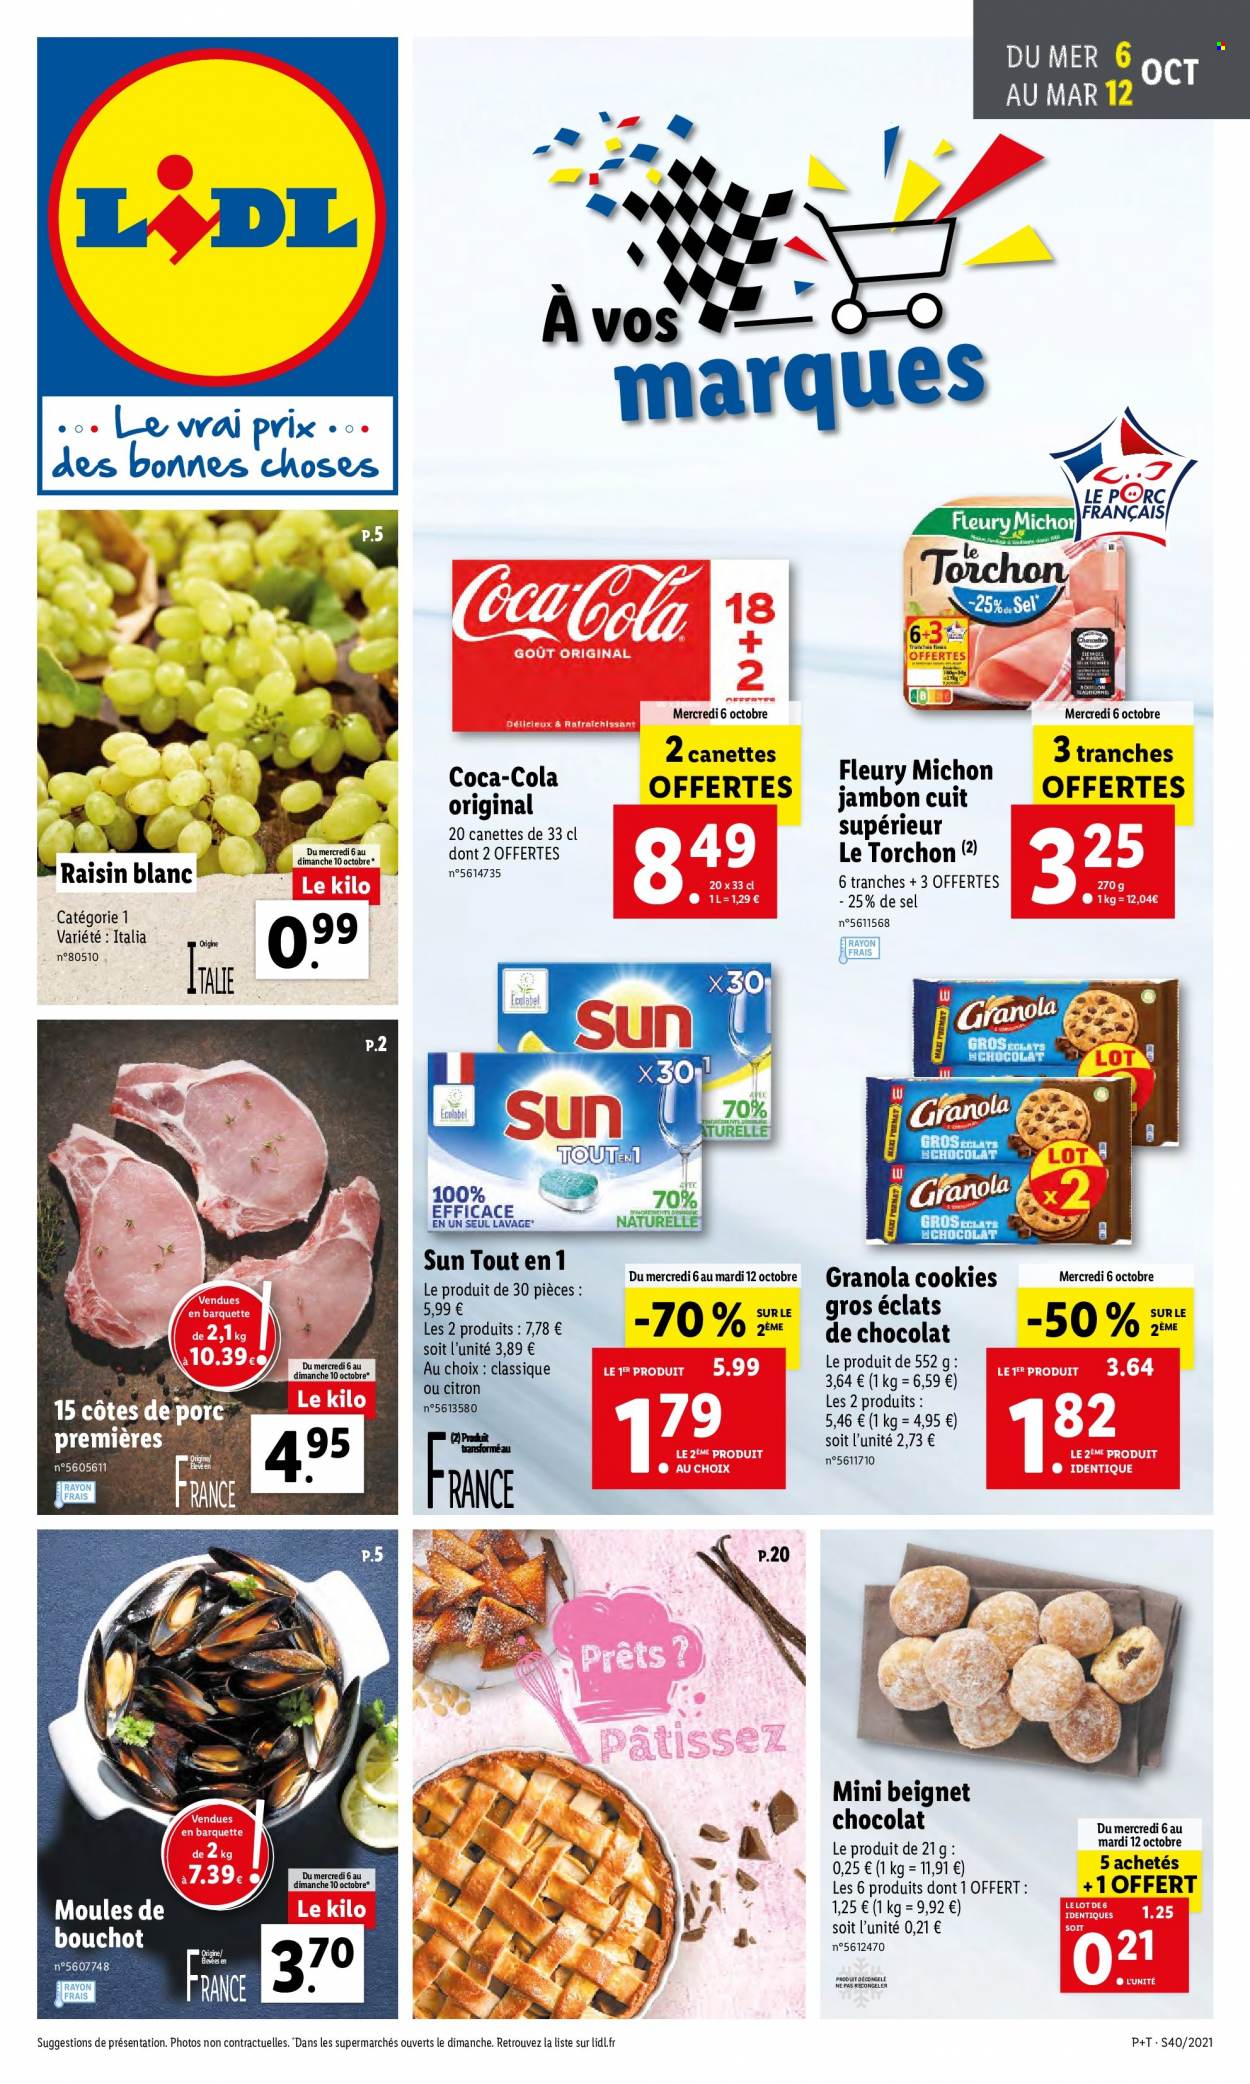 thumbnail - Catalogue Lidl - 06/10/2021 - 12/10/2021 - Produits soldés - côtes de porc, viande de porc, beignets, moules, Fleury Michon, jambon, biscuits, granola, cookies, raisins, Coca-Cola, torchon. Page 1.